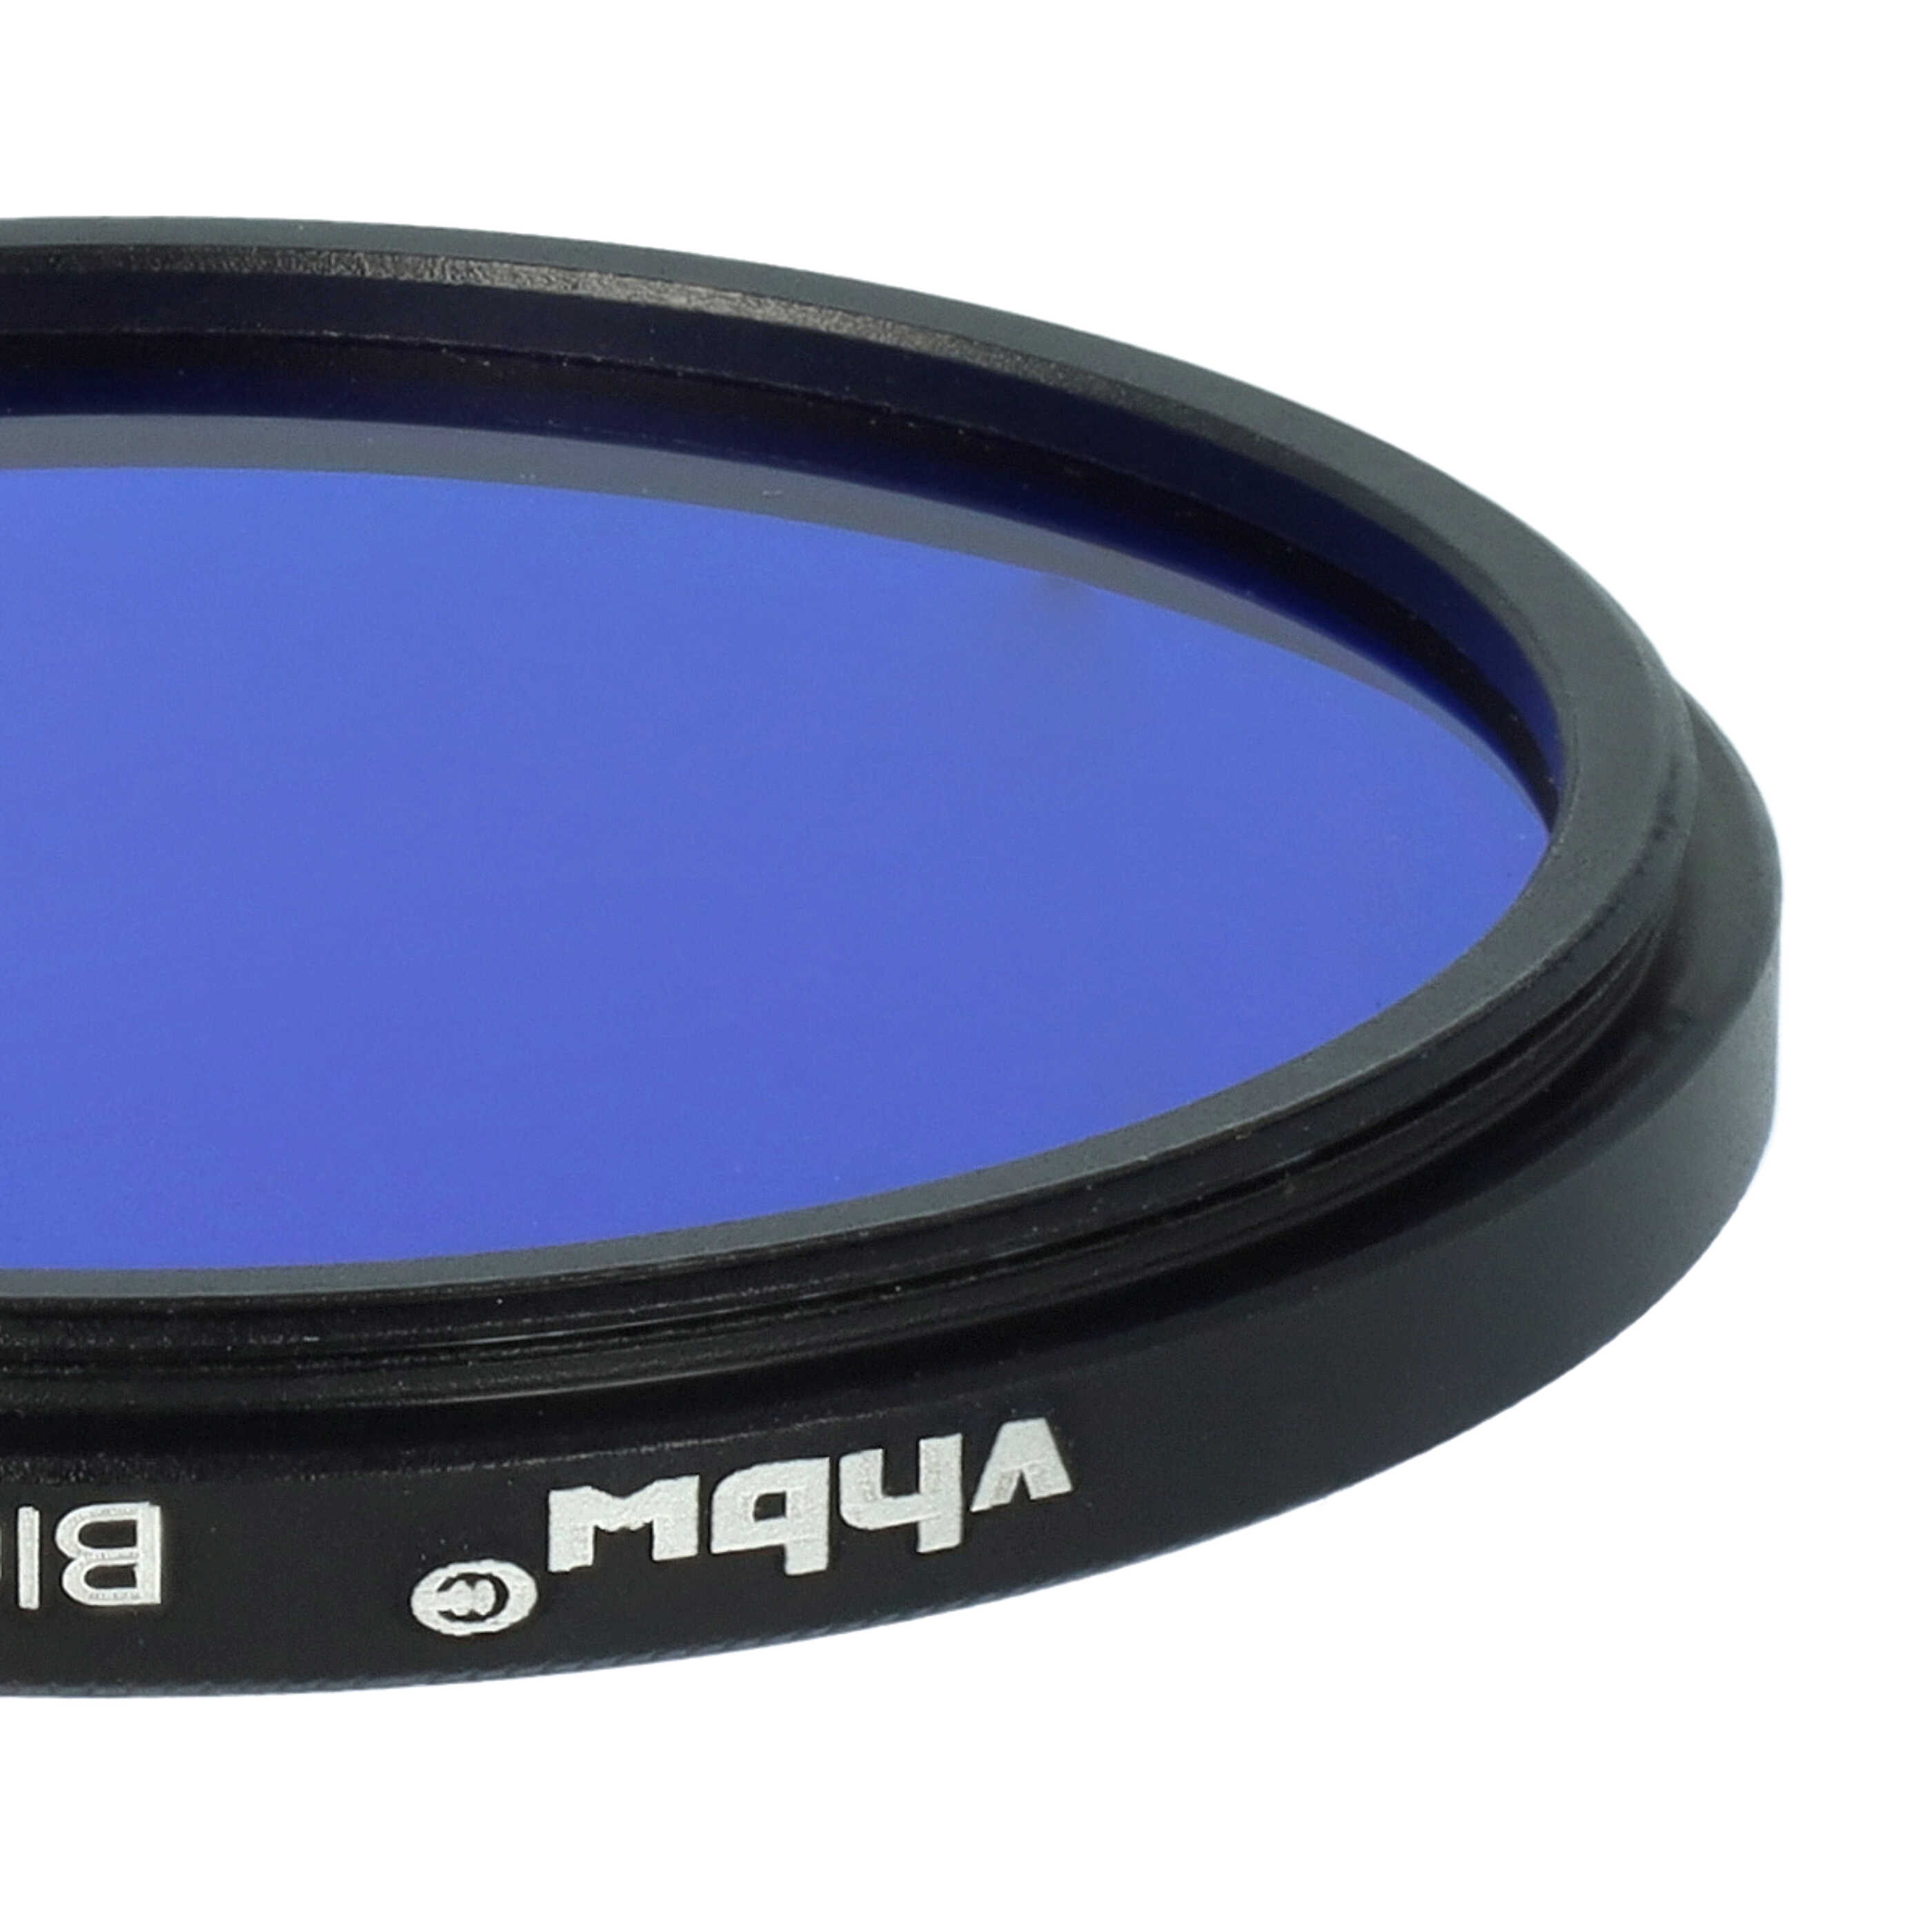 Filtro de color para objetivo de cámara con rosca de filtro de 52 mm - Filtro azul